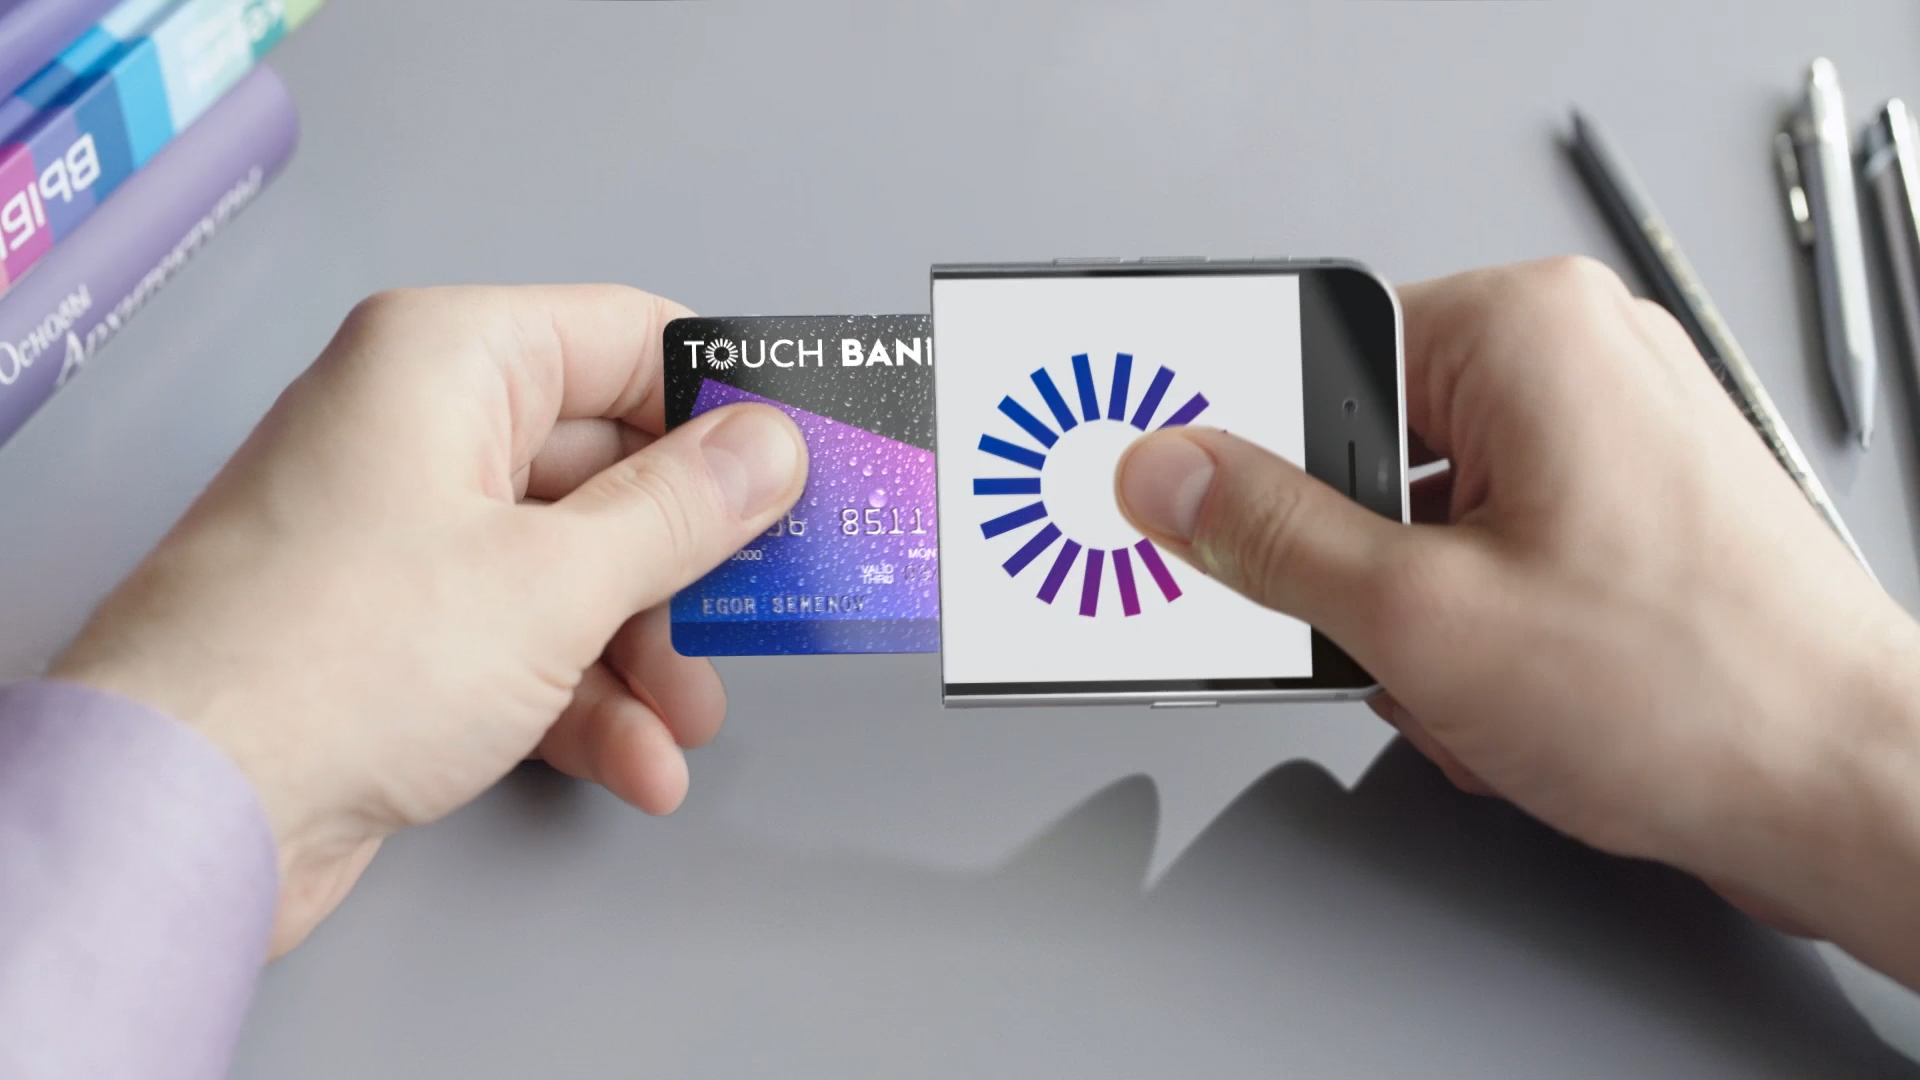 Тач банк. Сенсорная банковская карта. Touch карты. Оплата картой сенсорное.